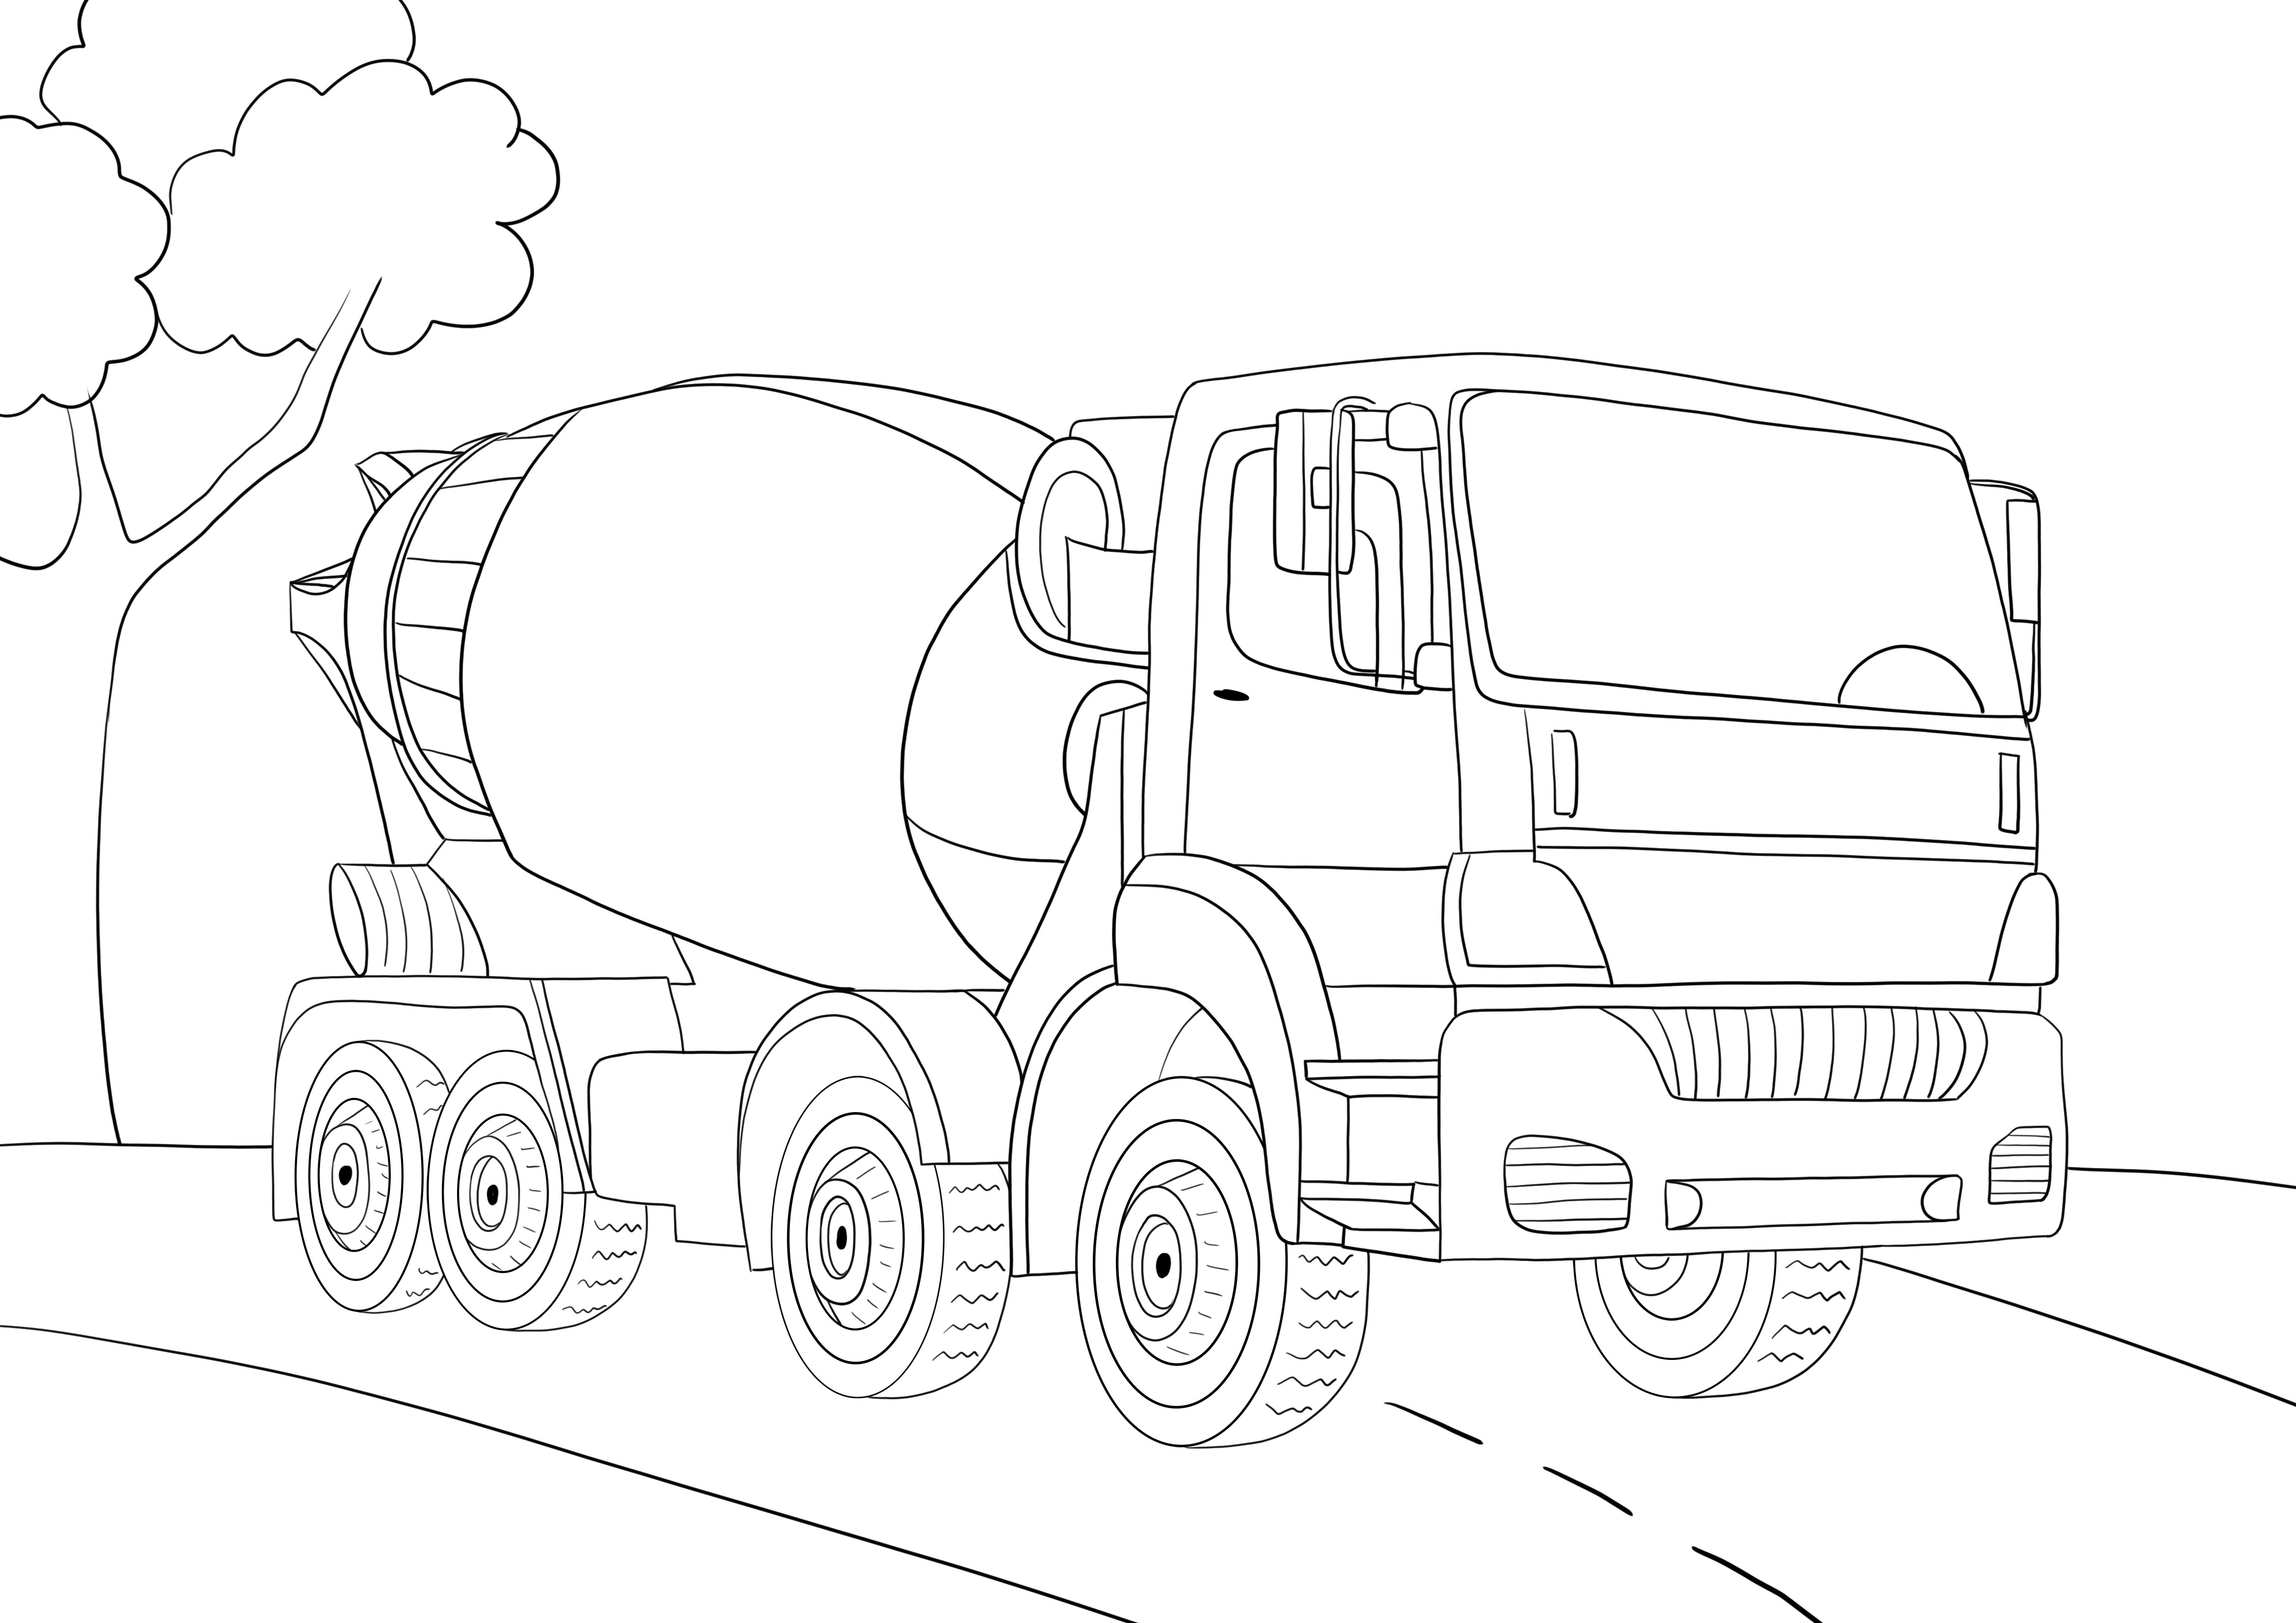 Lembar cetak gratis truk semen untuk diwarnai anak-anak